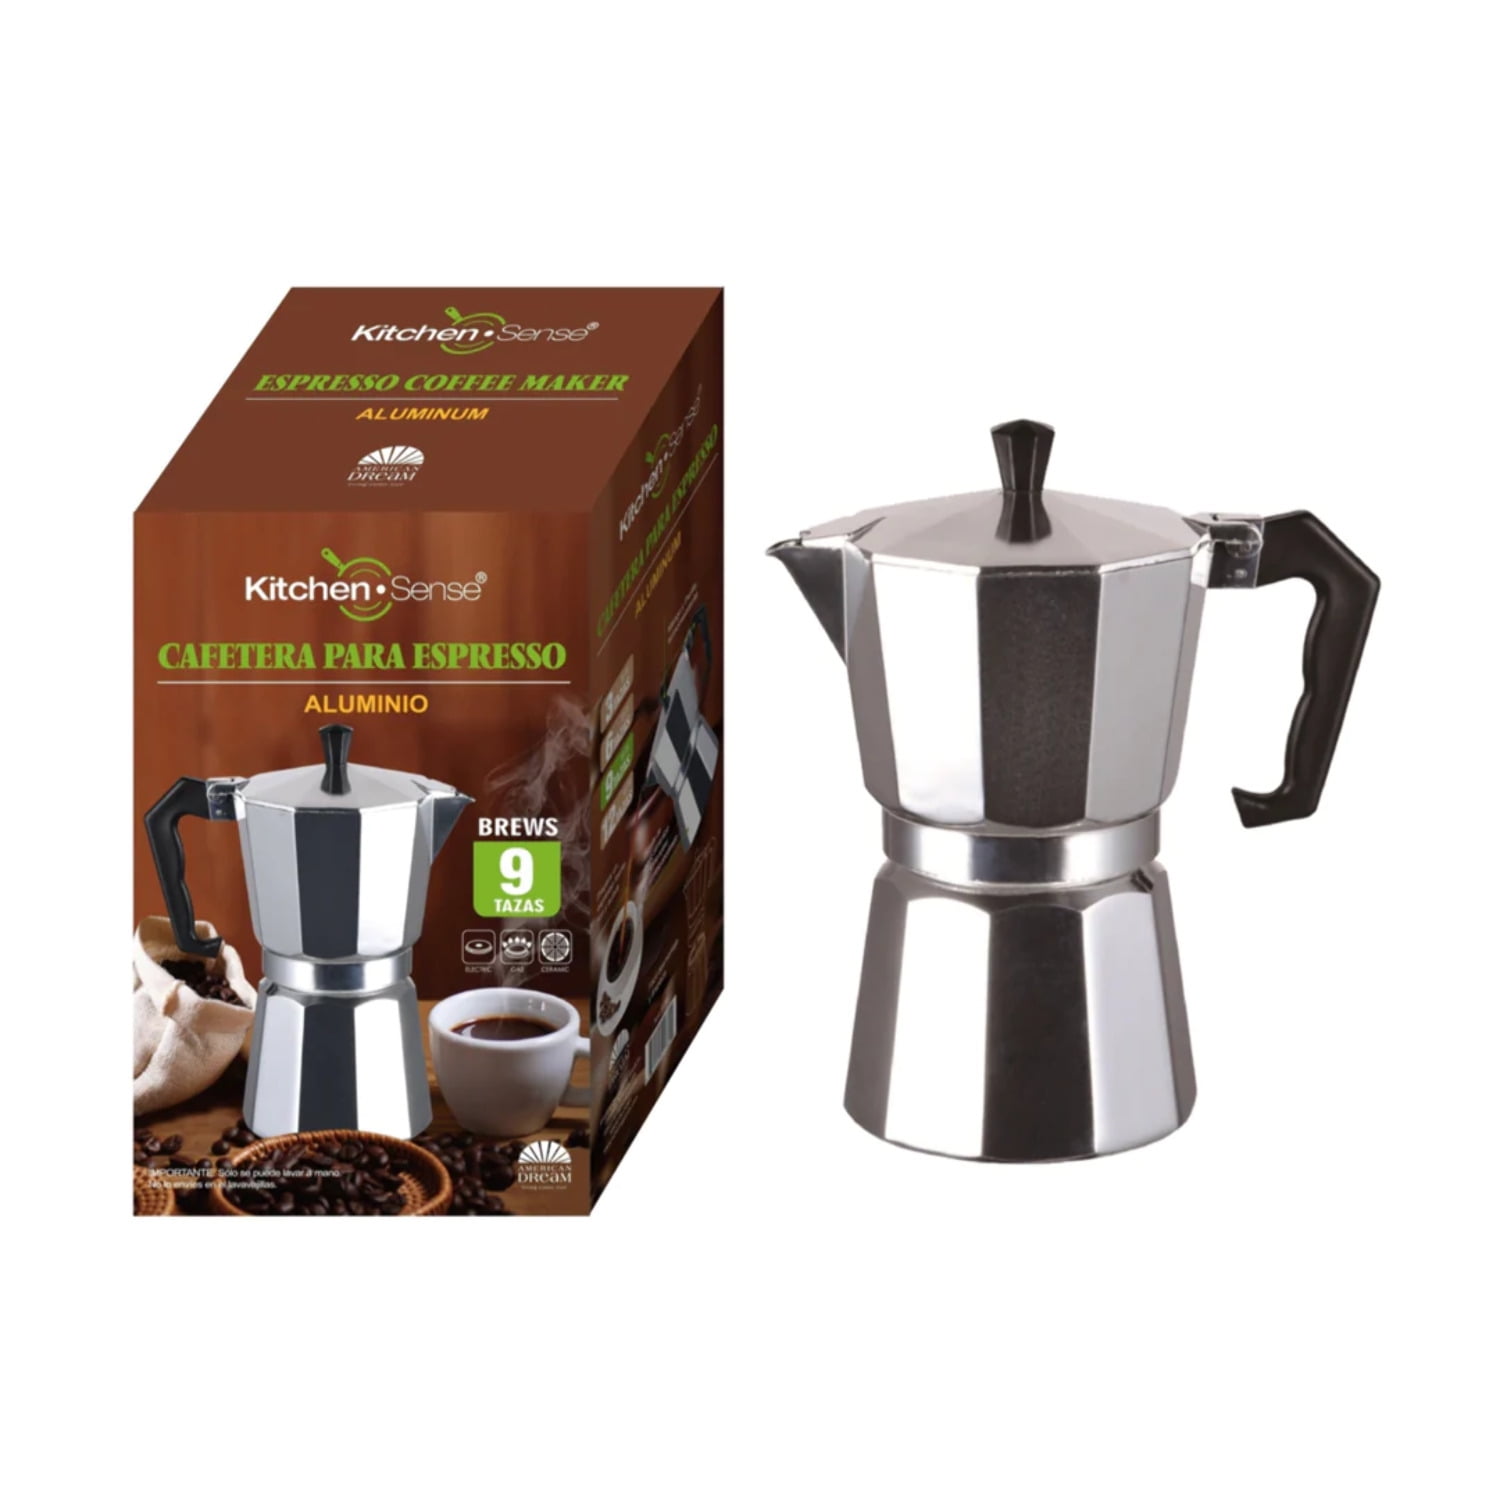 GoodCook Koffe 12-Cup Aluminum Stovetop Moka Pot Espresso Maker, Silver